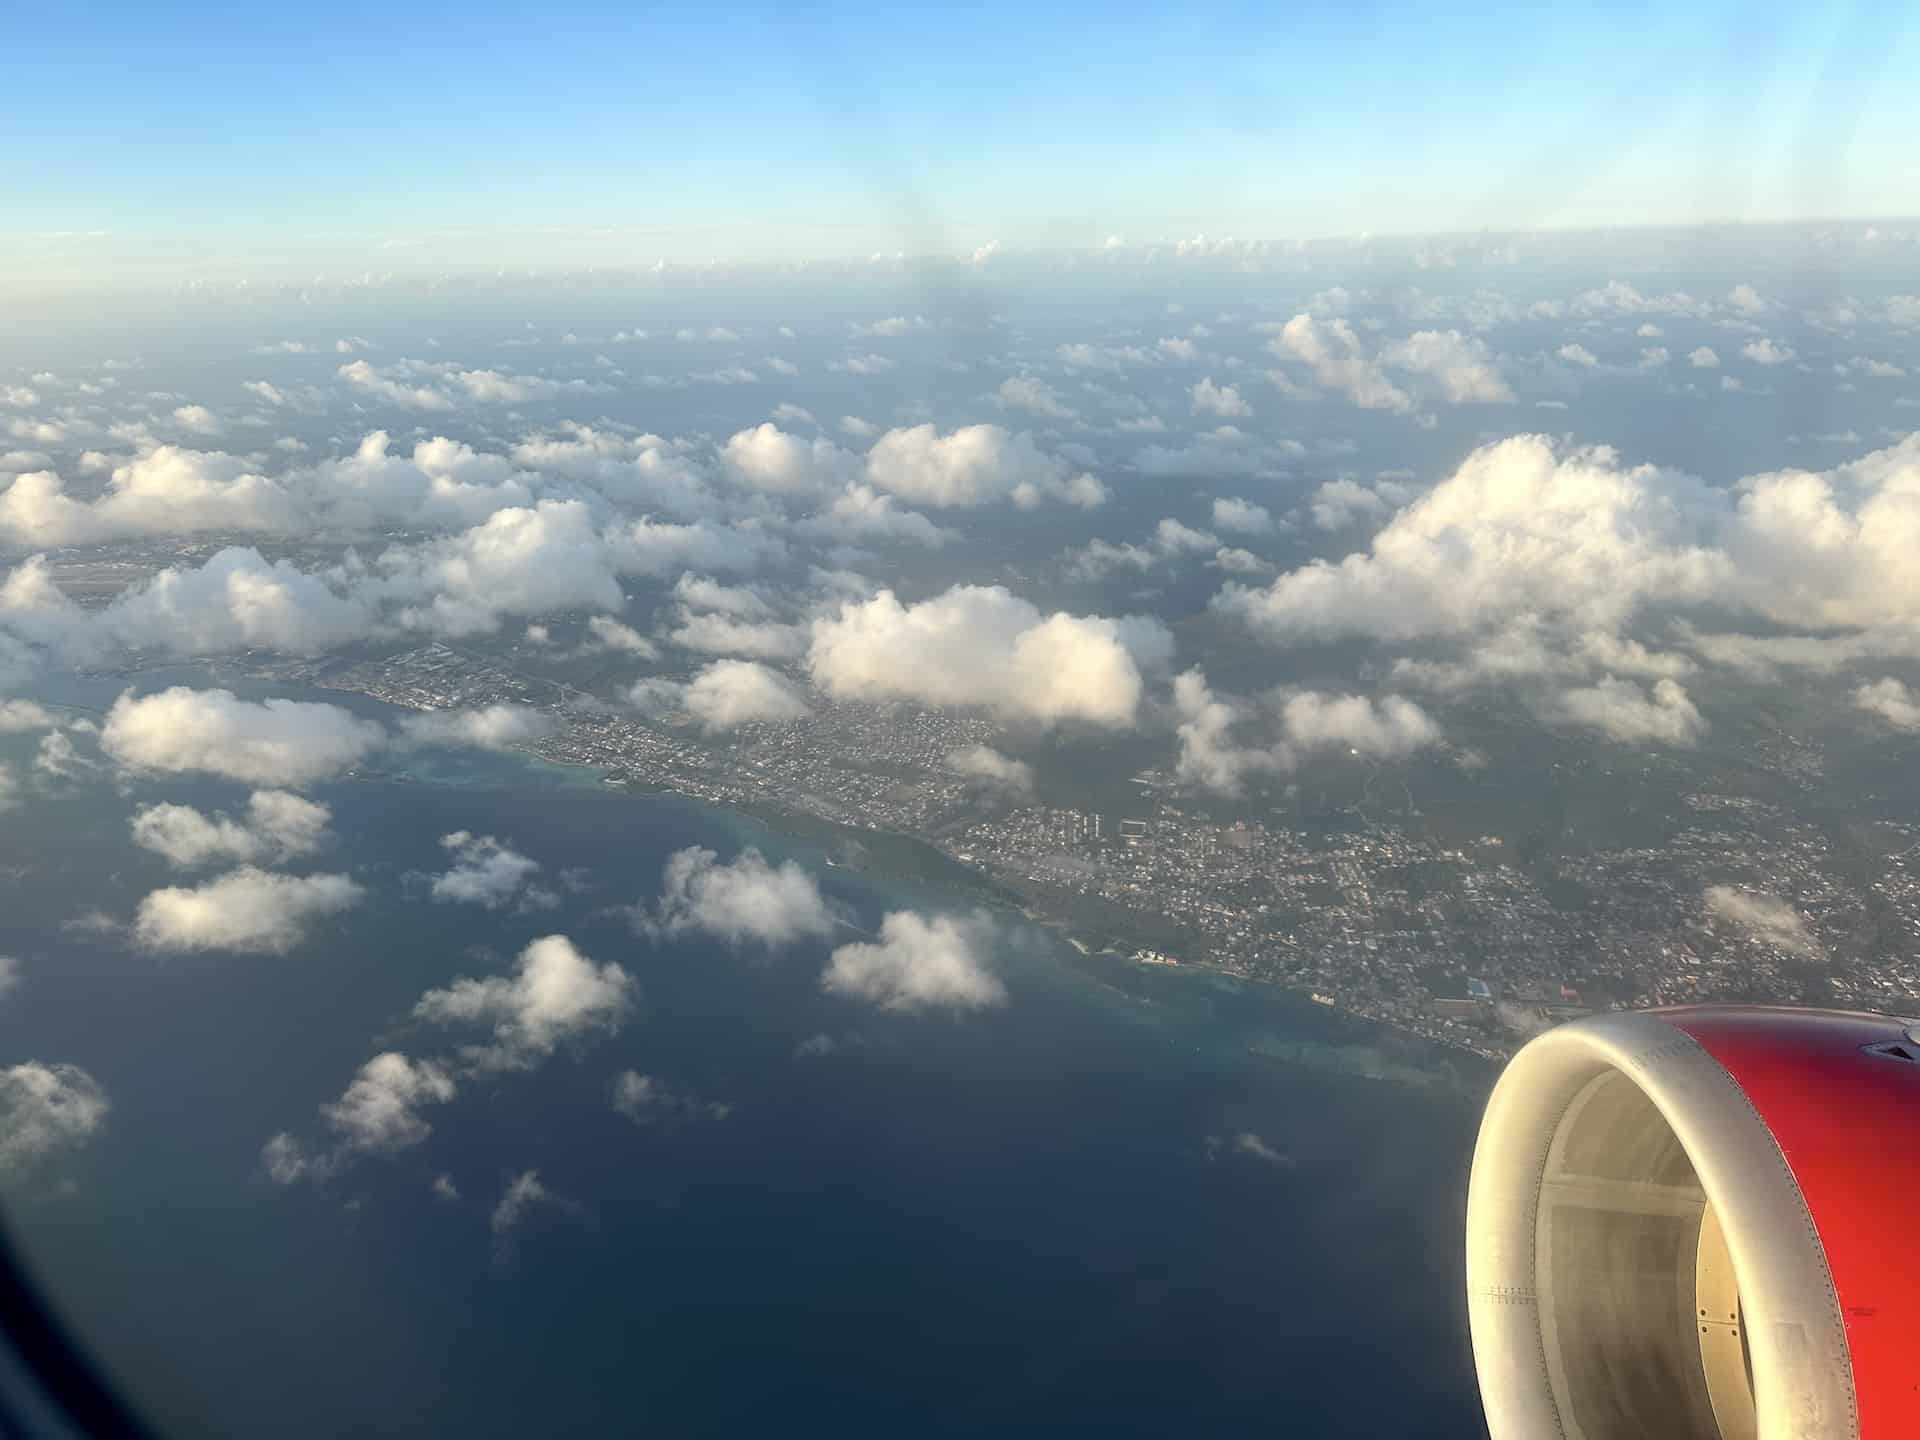 Flying over Aruba